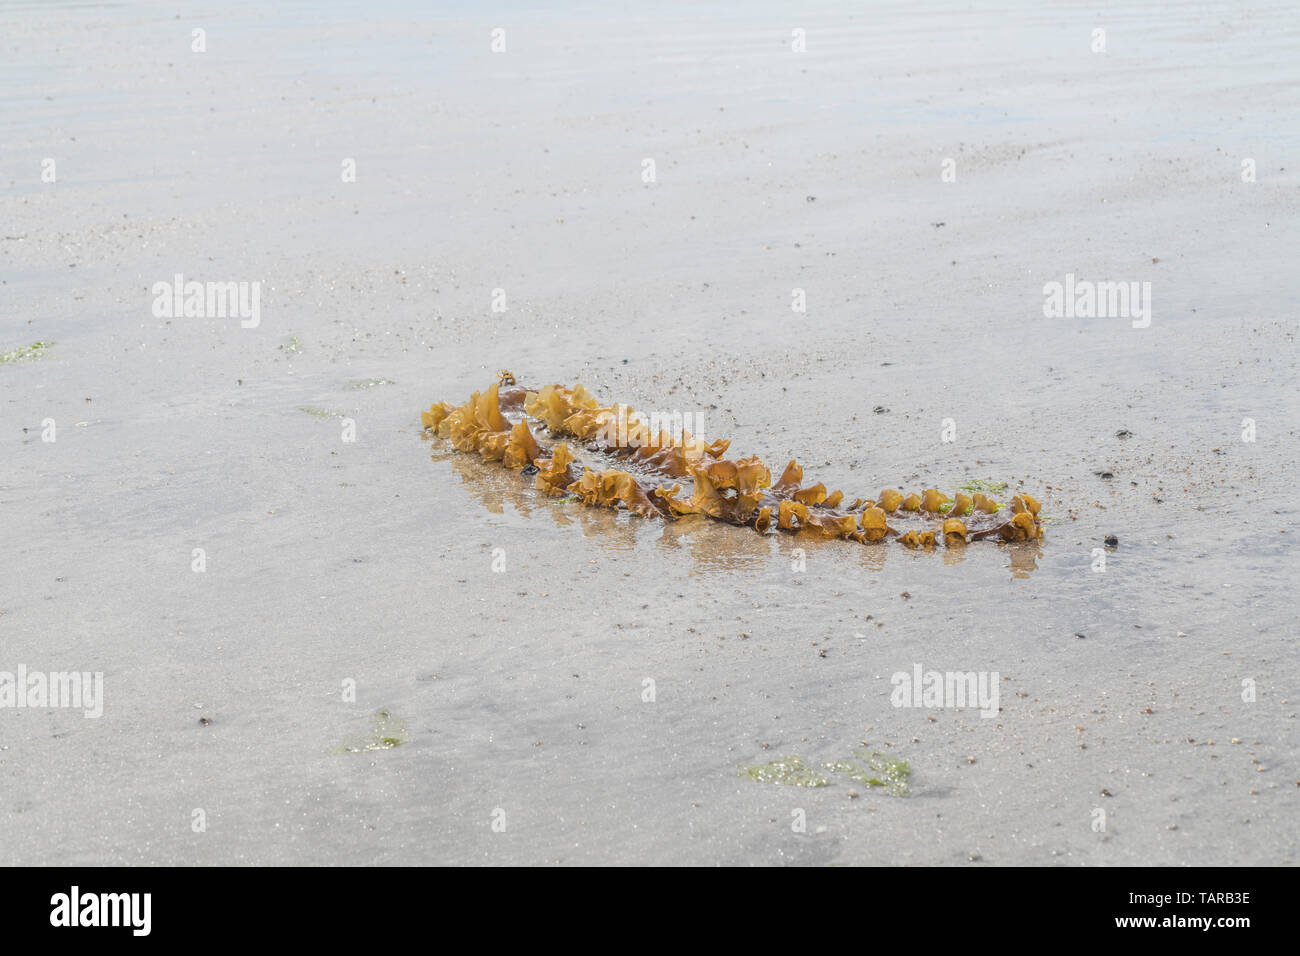 Saccharina latissima sucre / Varech Laminaria saccharina, anciennement échoués sur une plage. Peut être utilisé comme aliment lorsque fraîchement récoltés. Banque D'Images